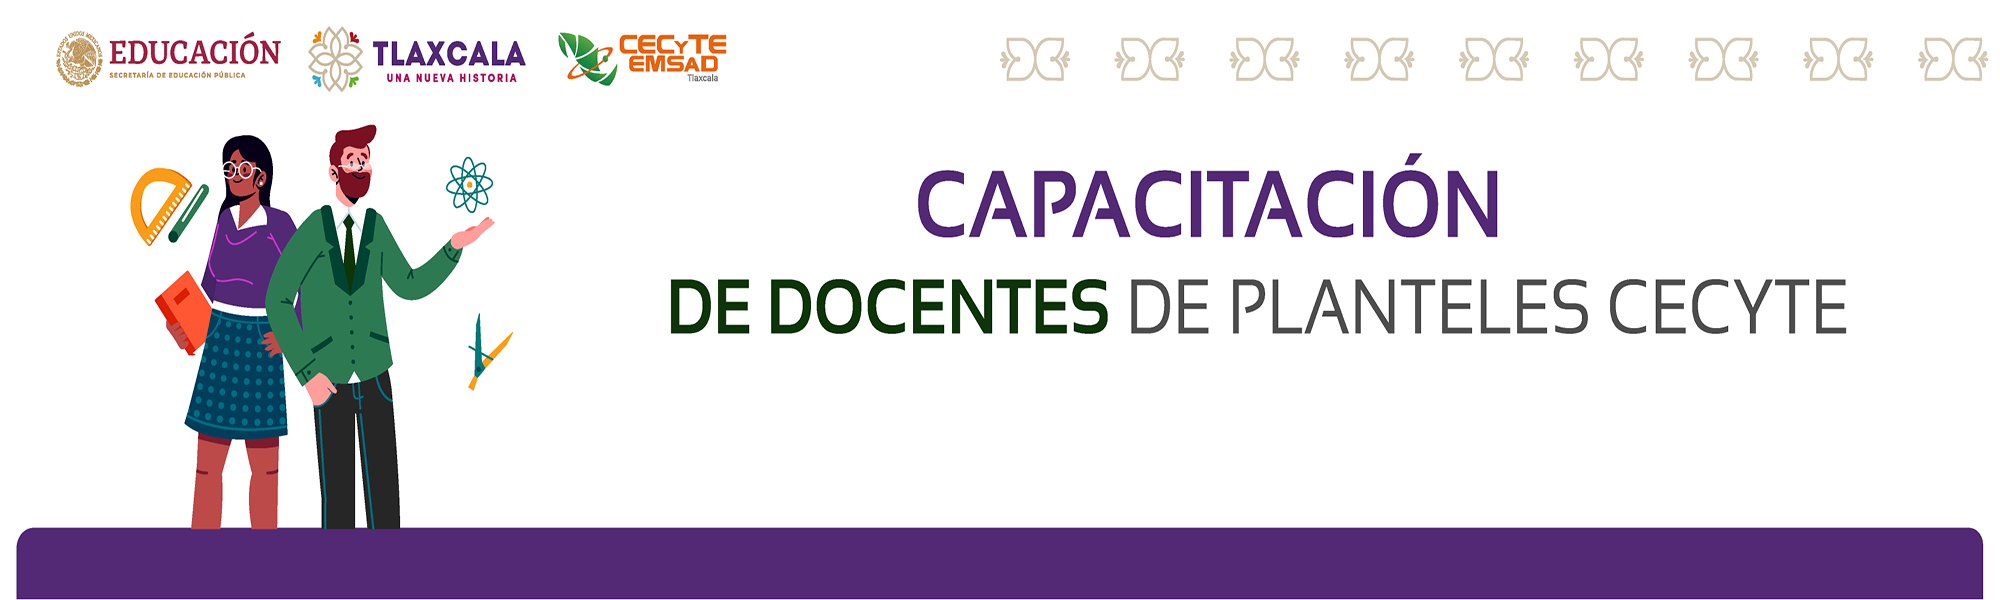 Banners Deteccion Capacitacion docentes1